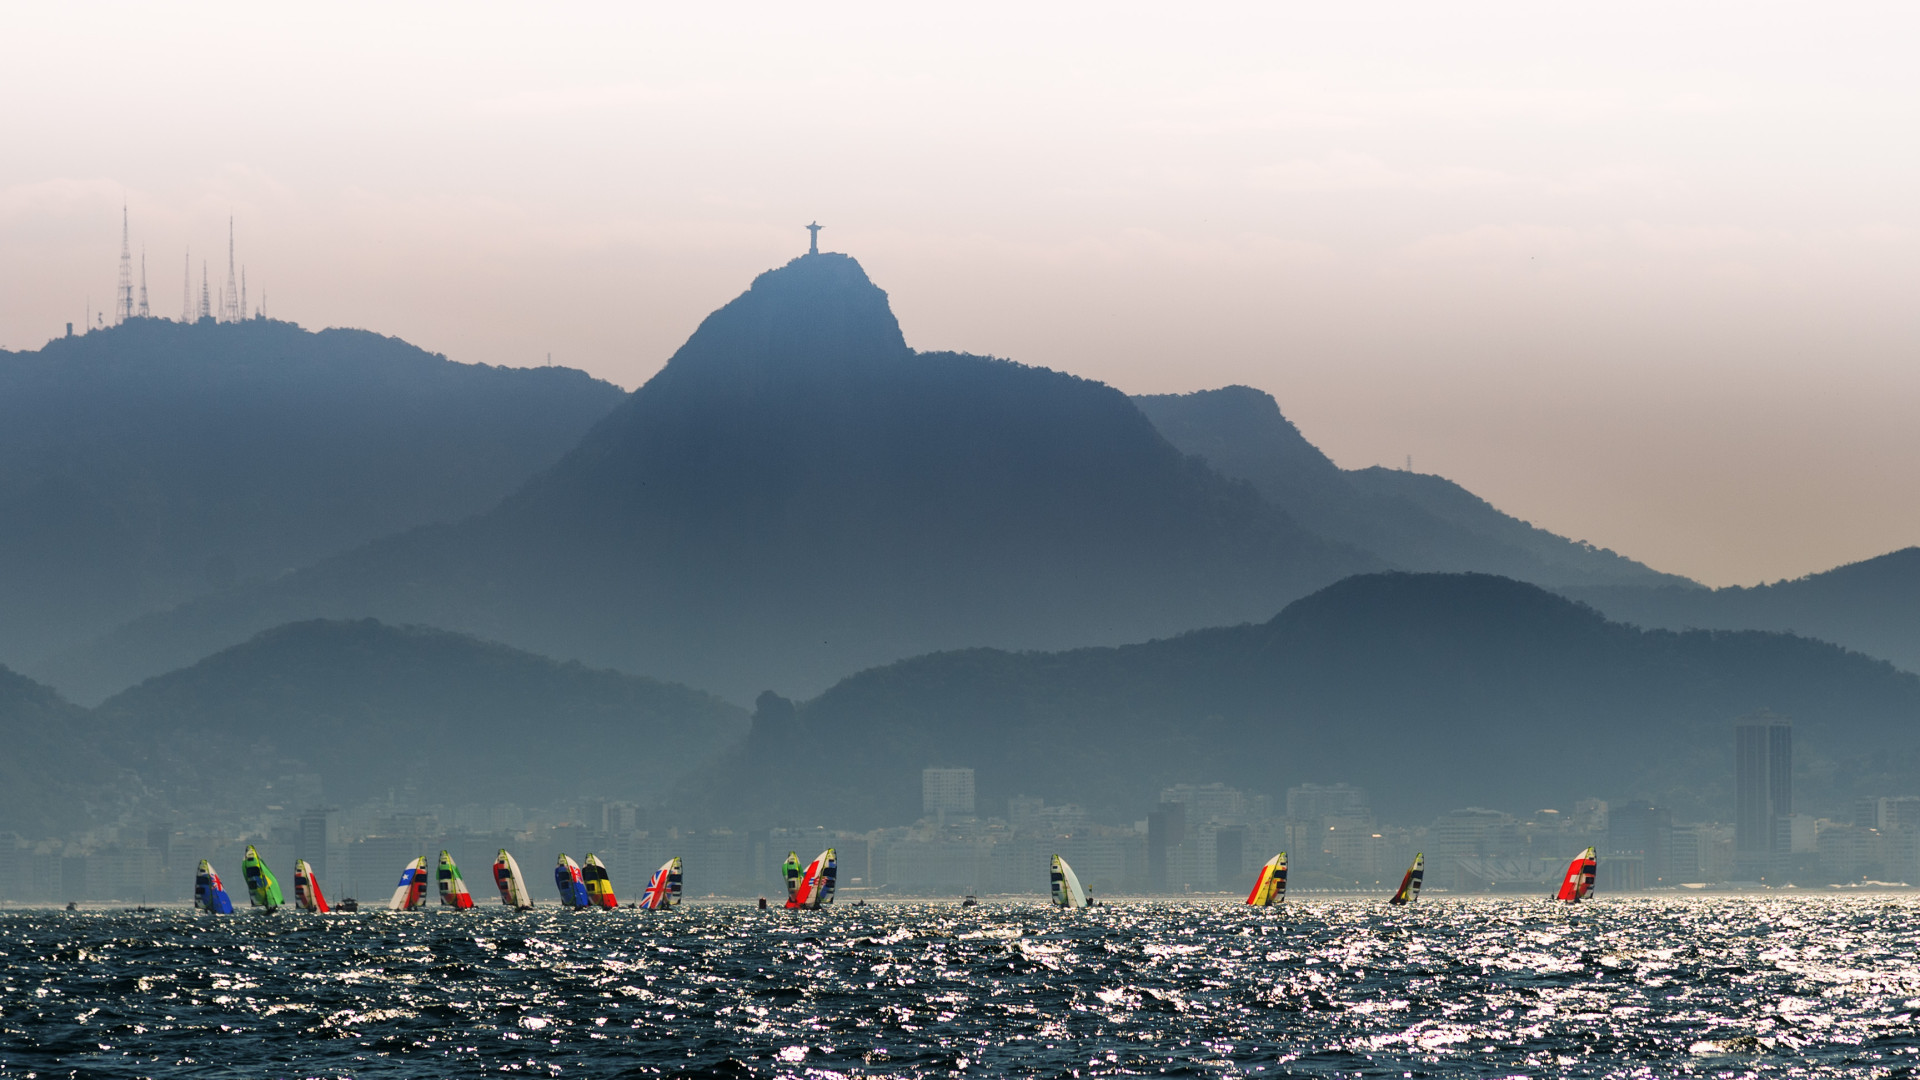 Legado da Rio 2016 tem ‘contagem de corpos’,
diz revista dos EUA